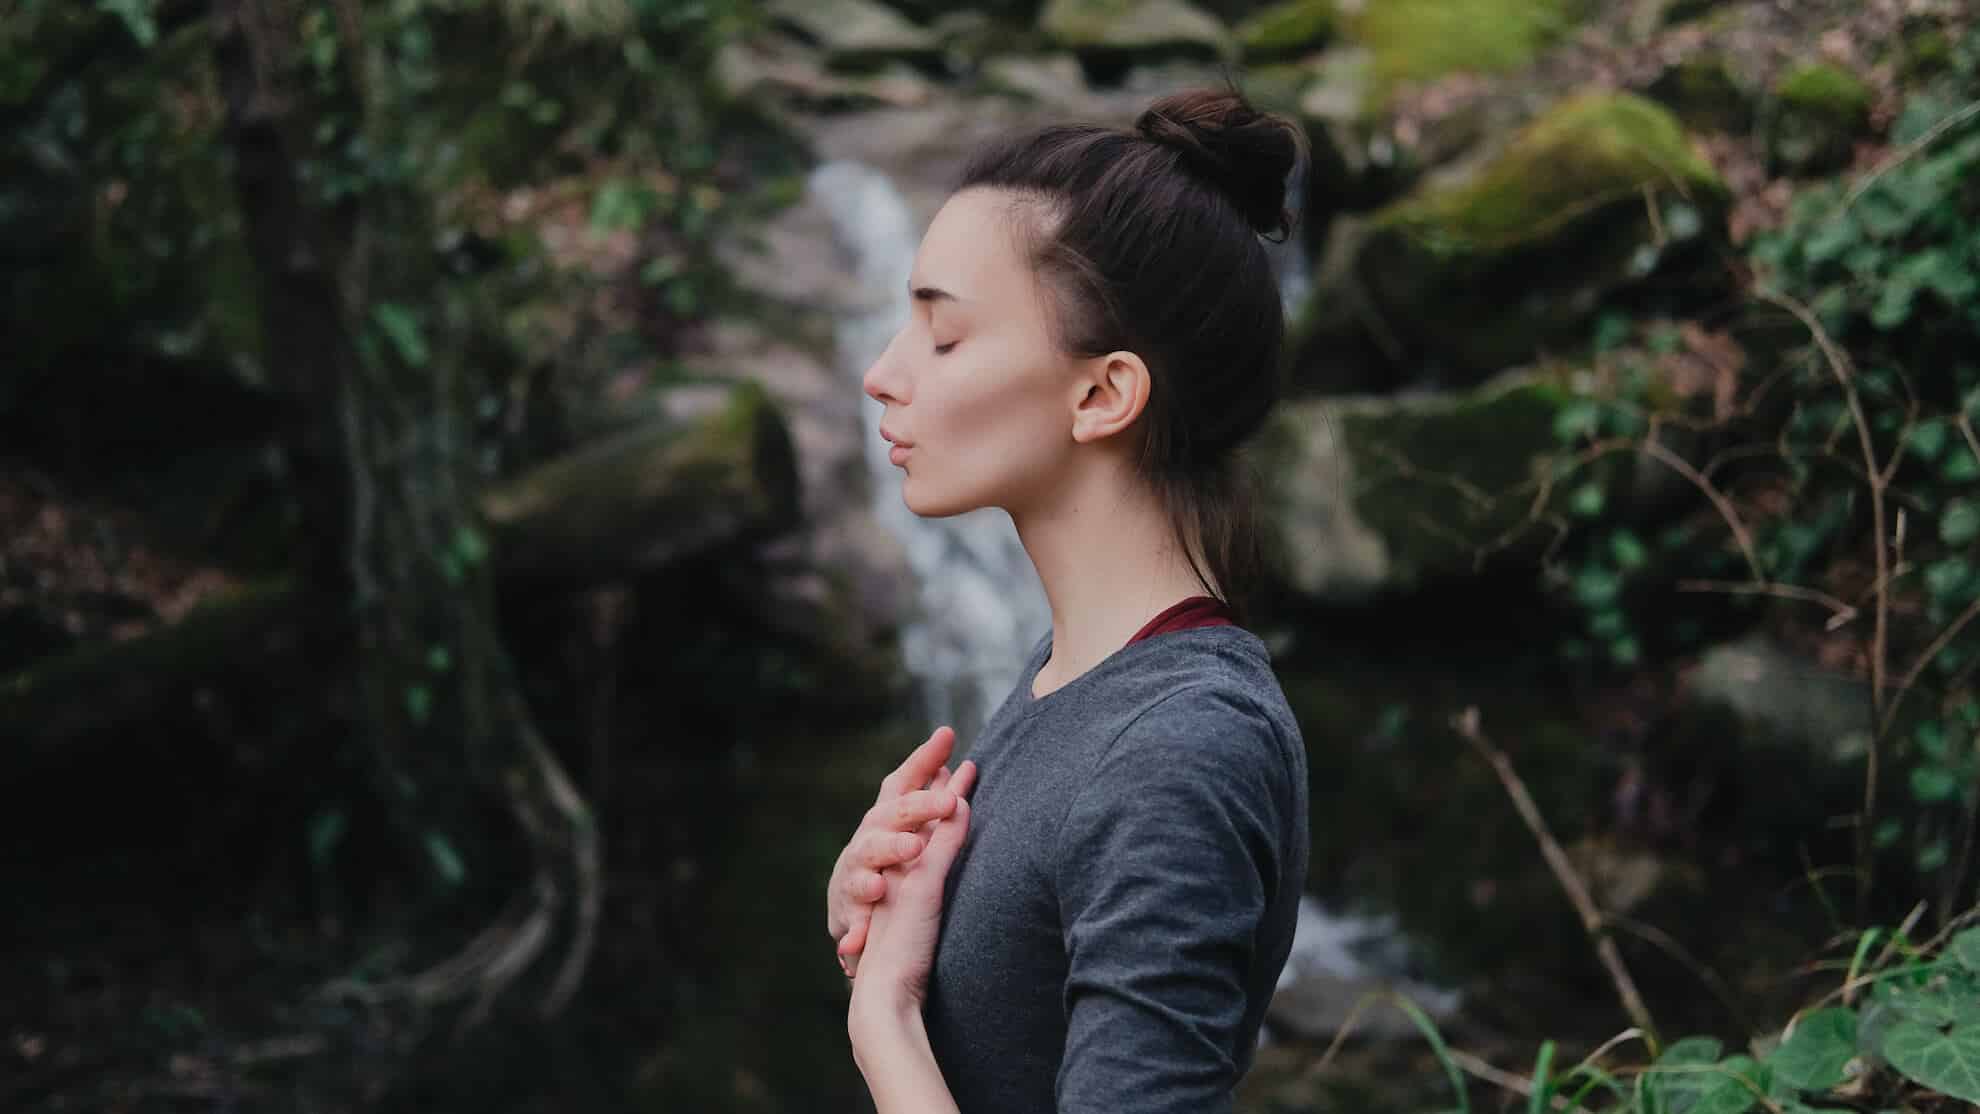 Eine Frau übt Achtsamkeit vor einem ruhigen Wasserfall und findet durch Meditation inneren Frieden.